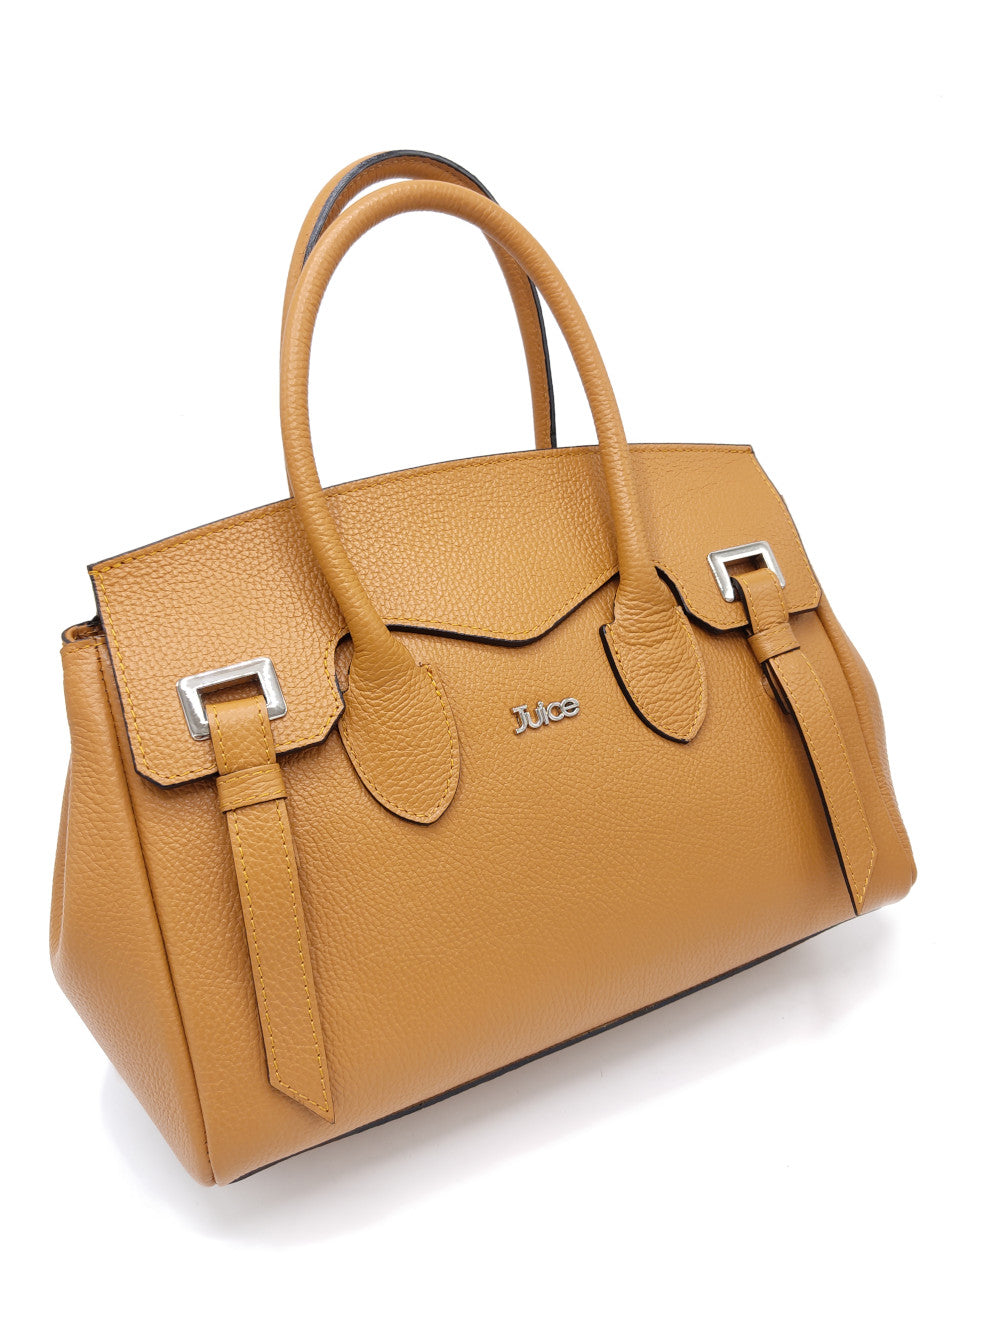 Tumbled genuine leather handbag art. 112305